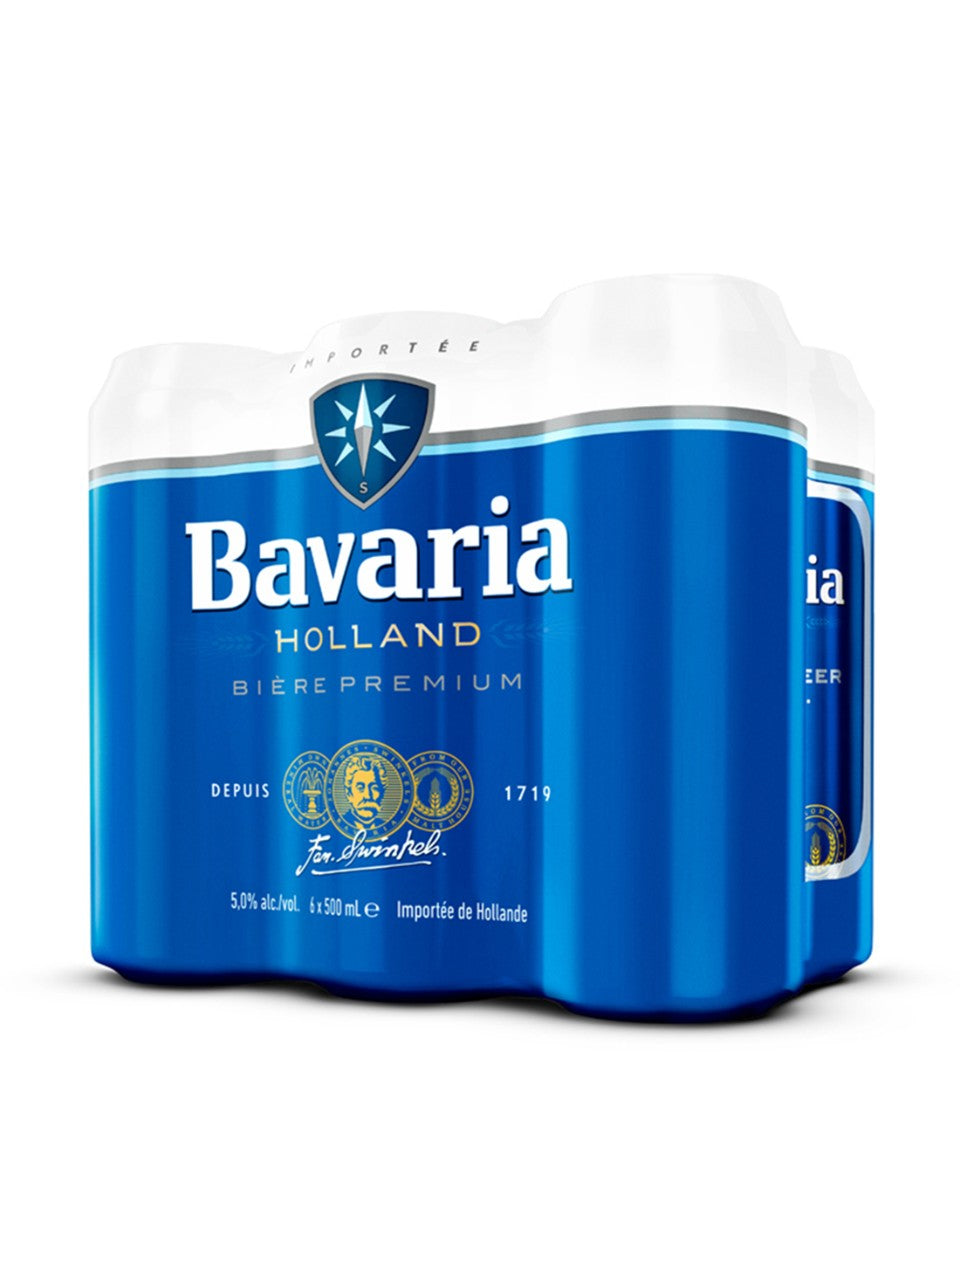 Bavaria Premium 6 x 500 ml can